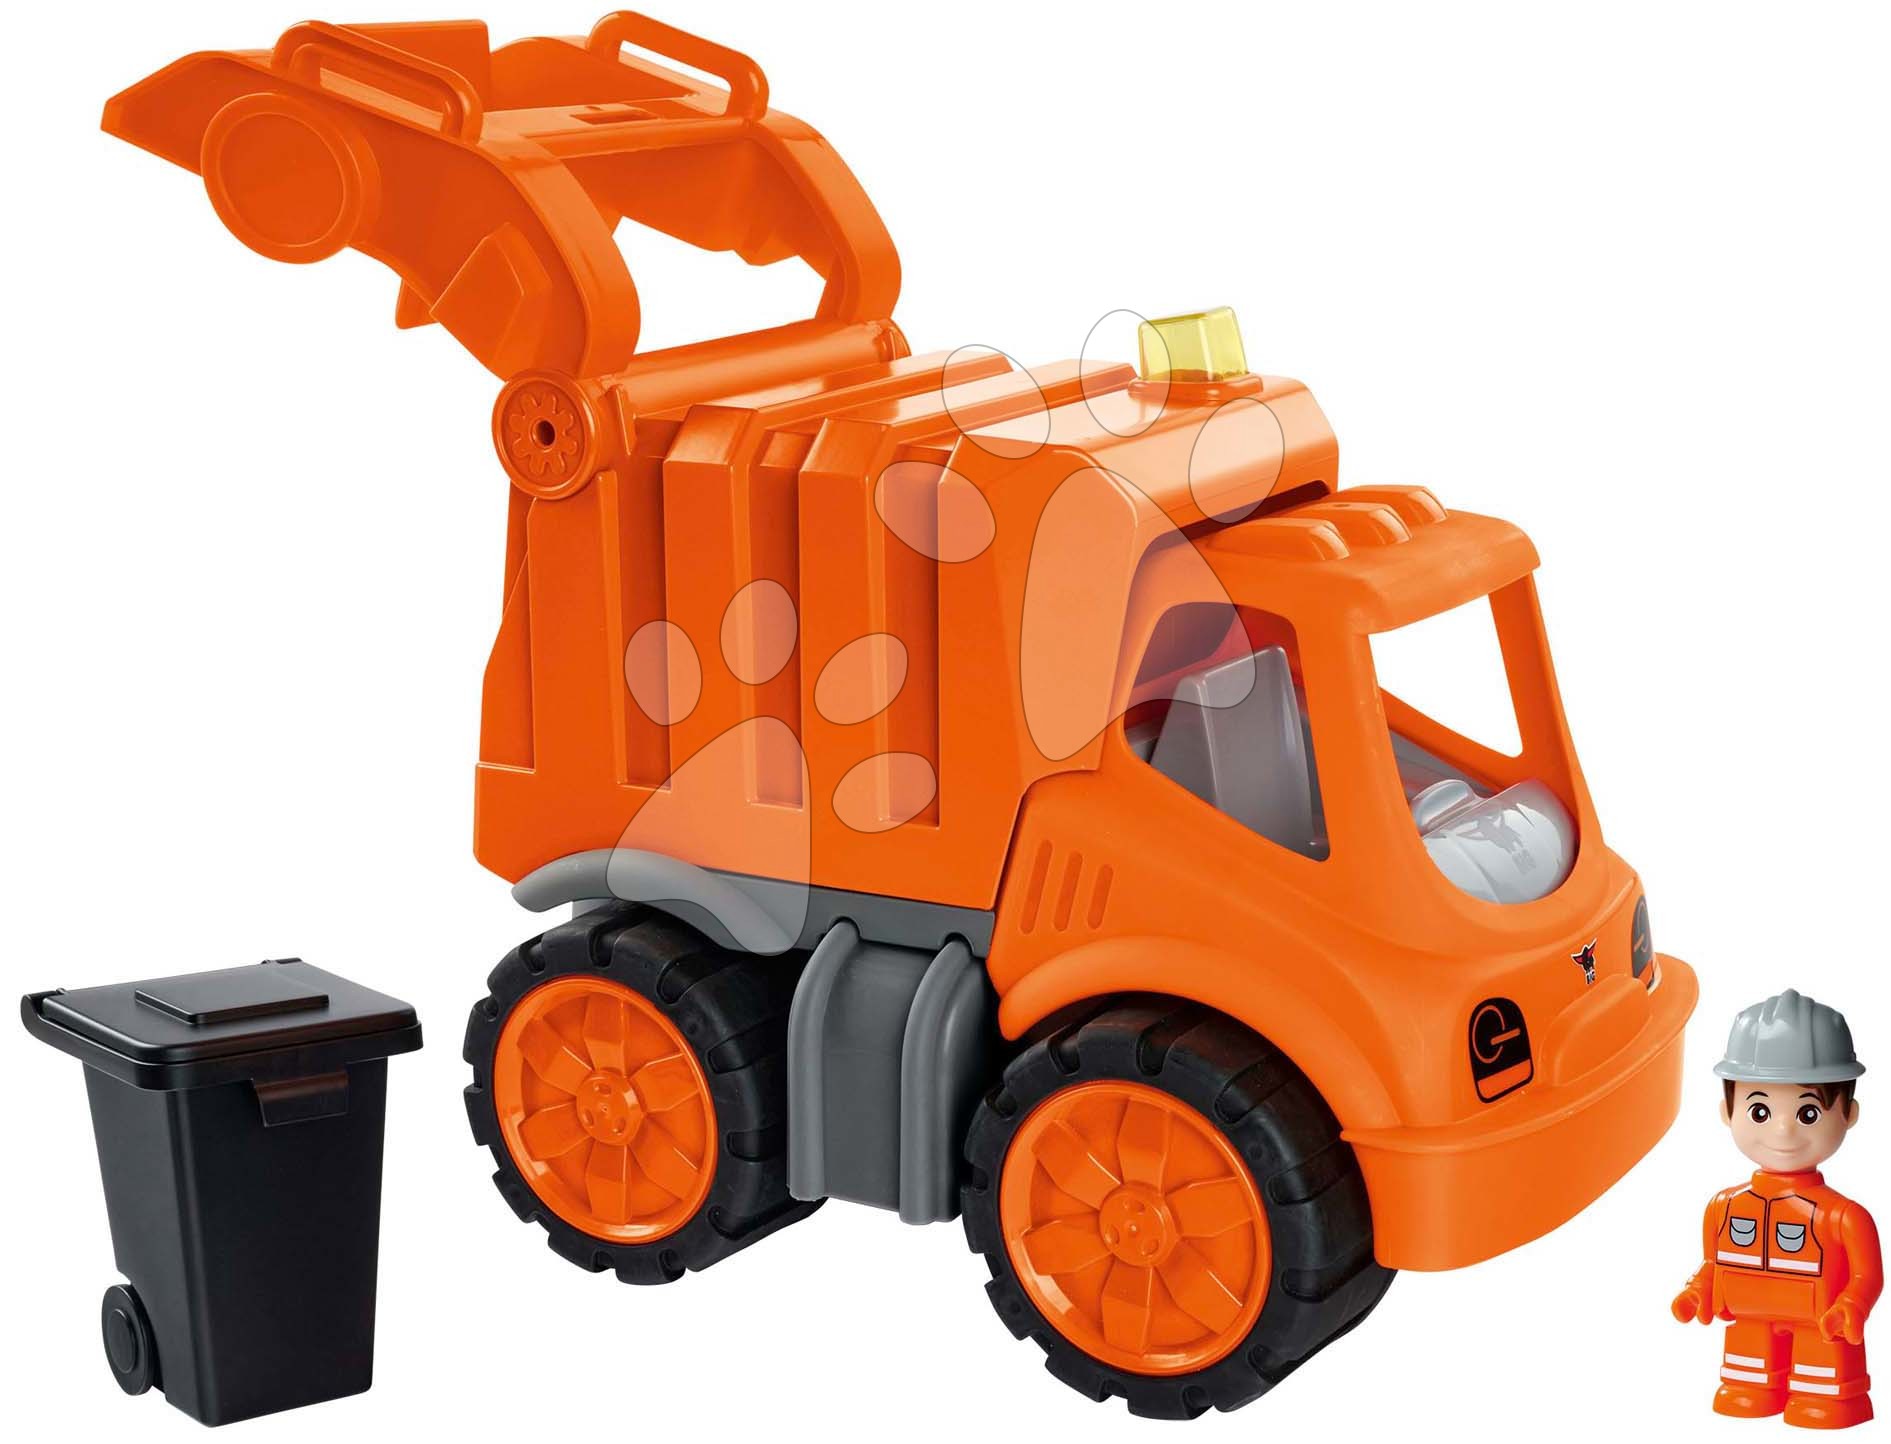 Popelářské auto Power Worker Garbage Truck + Figurine BIG s popelnicí a pohyblivé části – gumová kola od 2 let